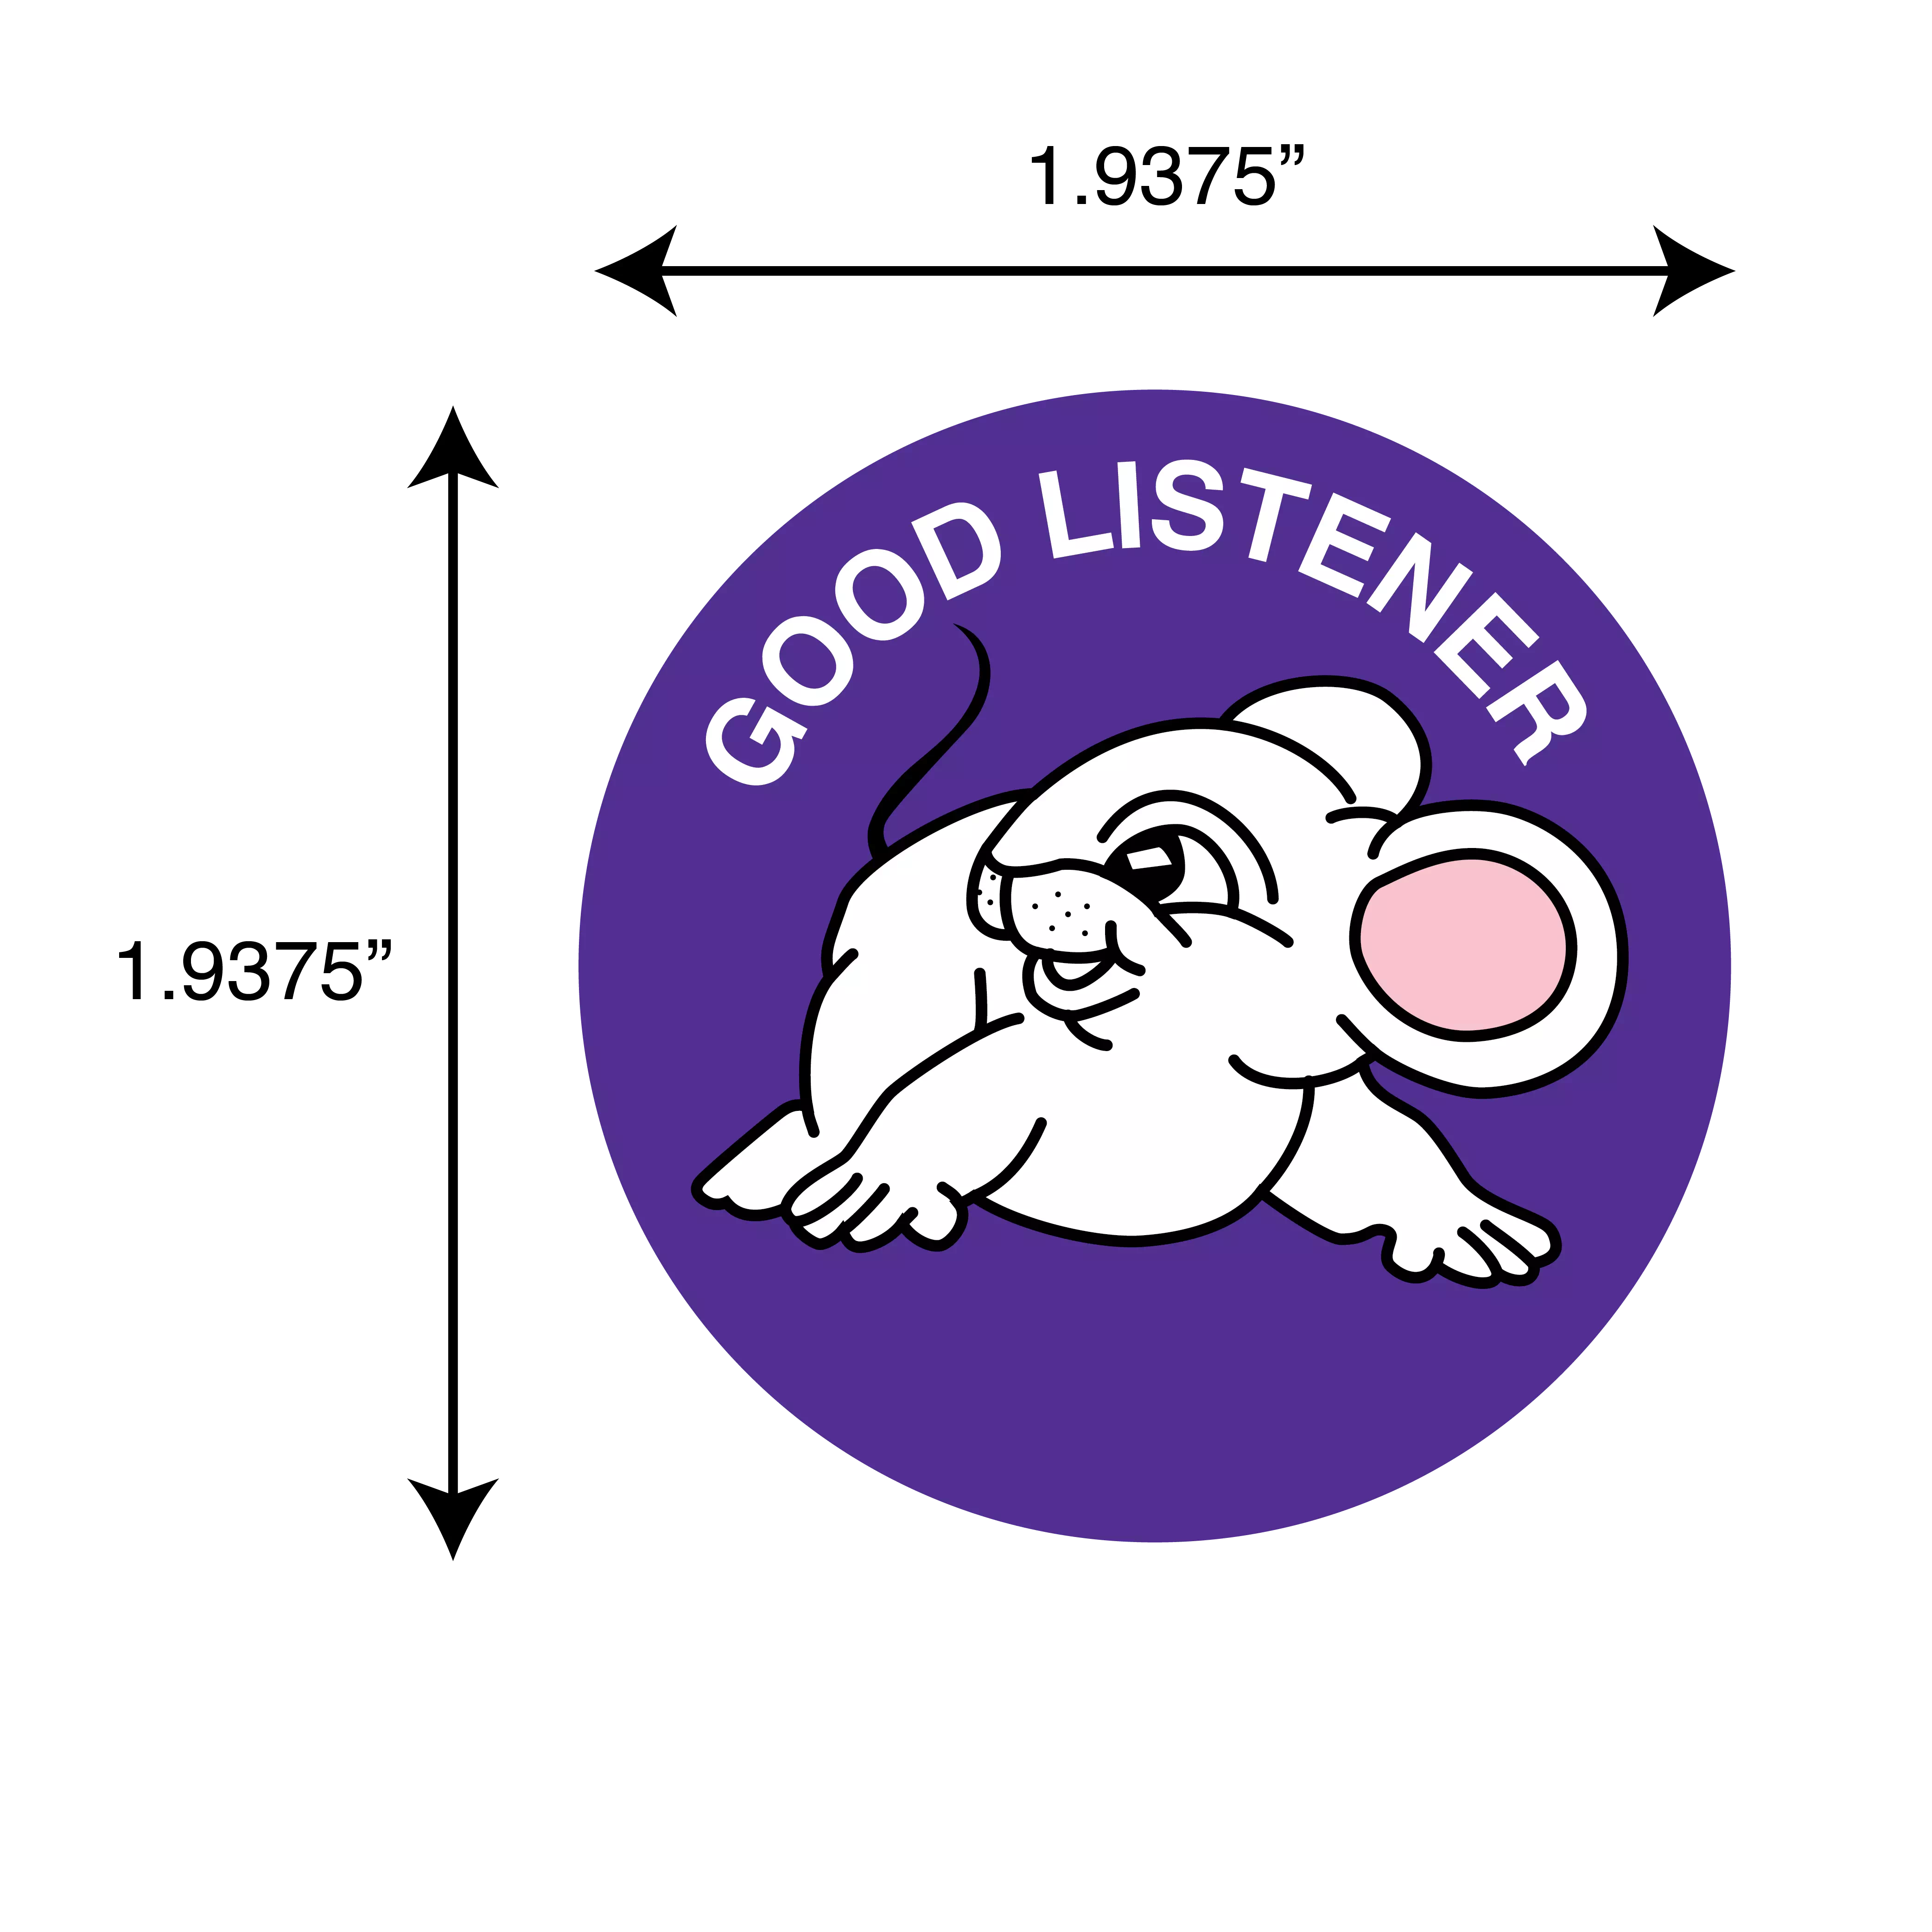 Good Listener